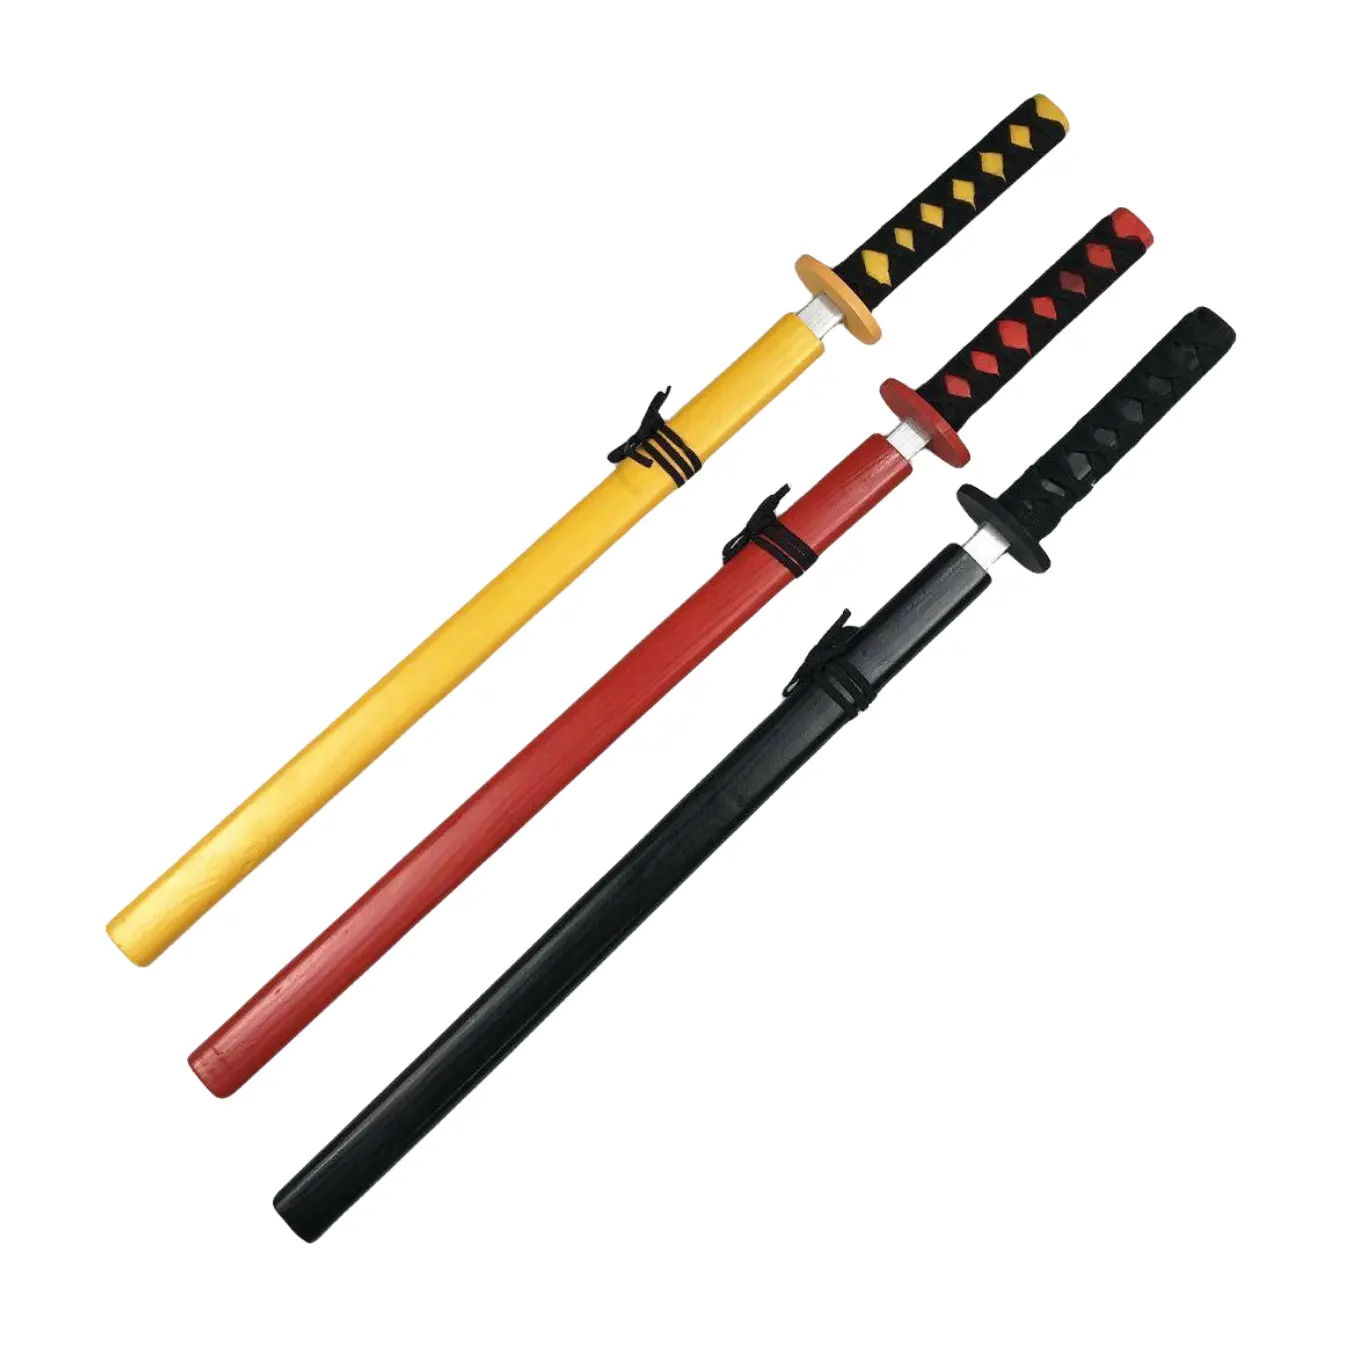 Japanischer Hersteller Anime Schwert Katana Holz Handwerk Cosplay Requisiten Spielzeug Schwerter Messer Benutzer definiertes Spielzeug